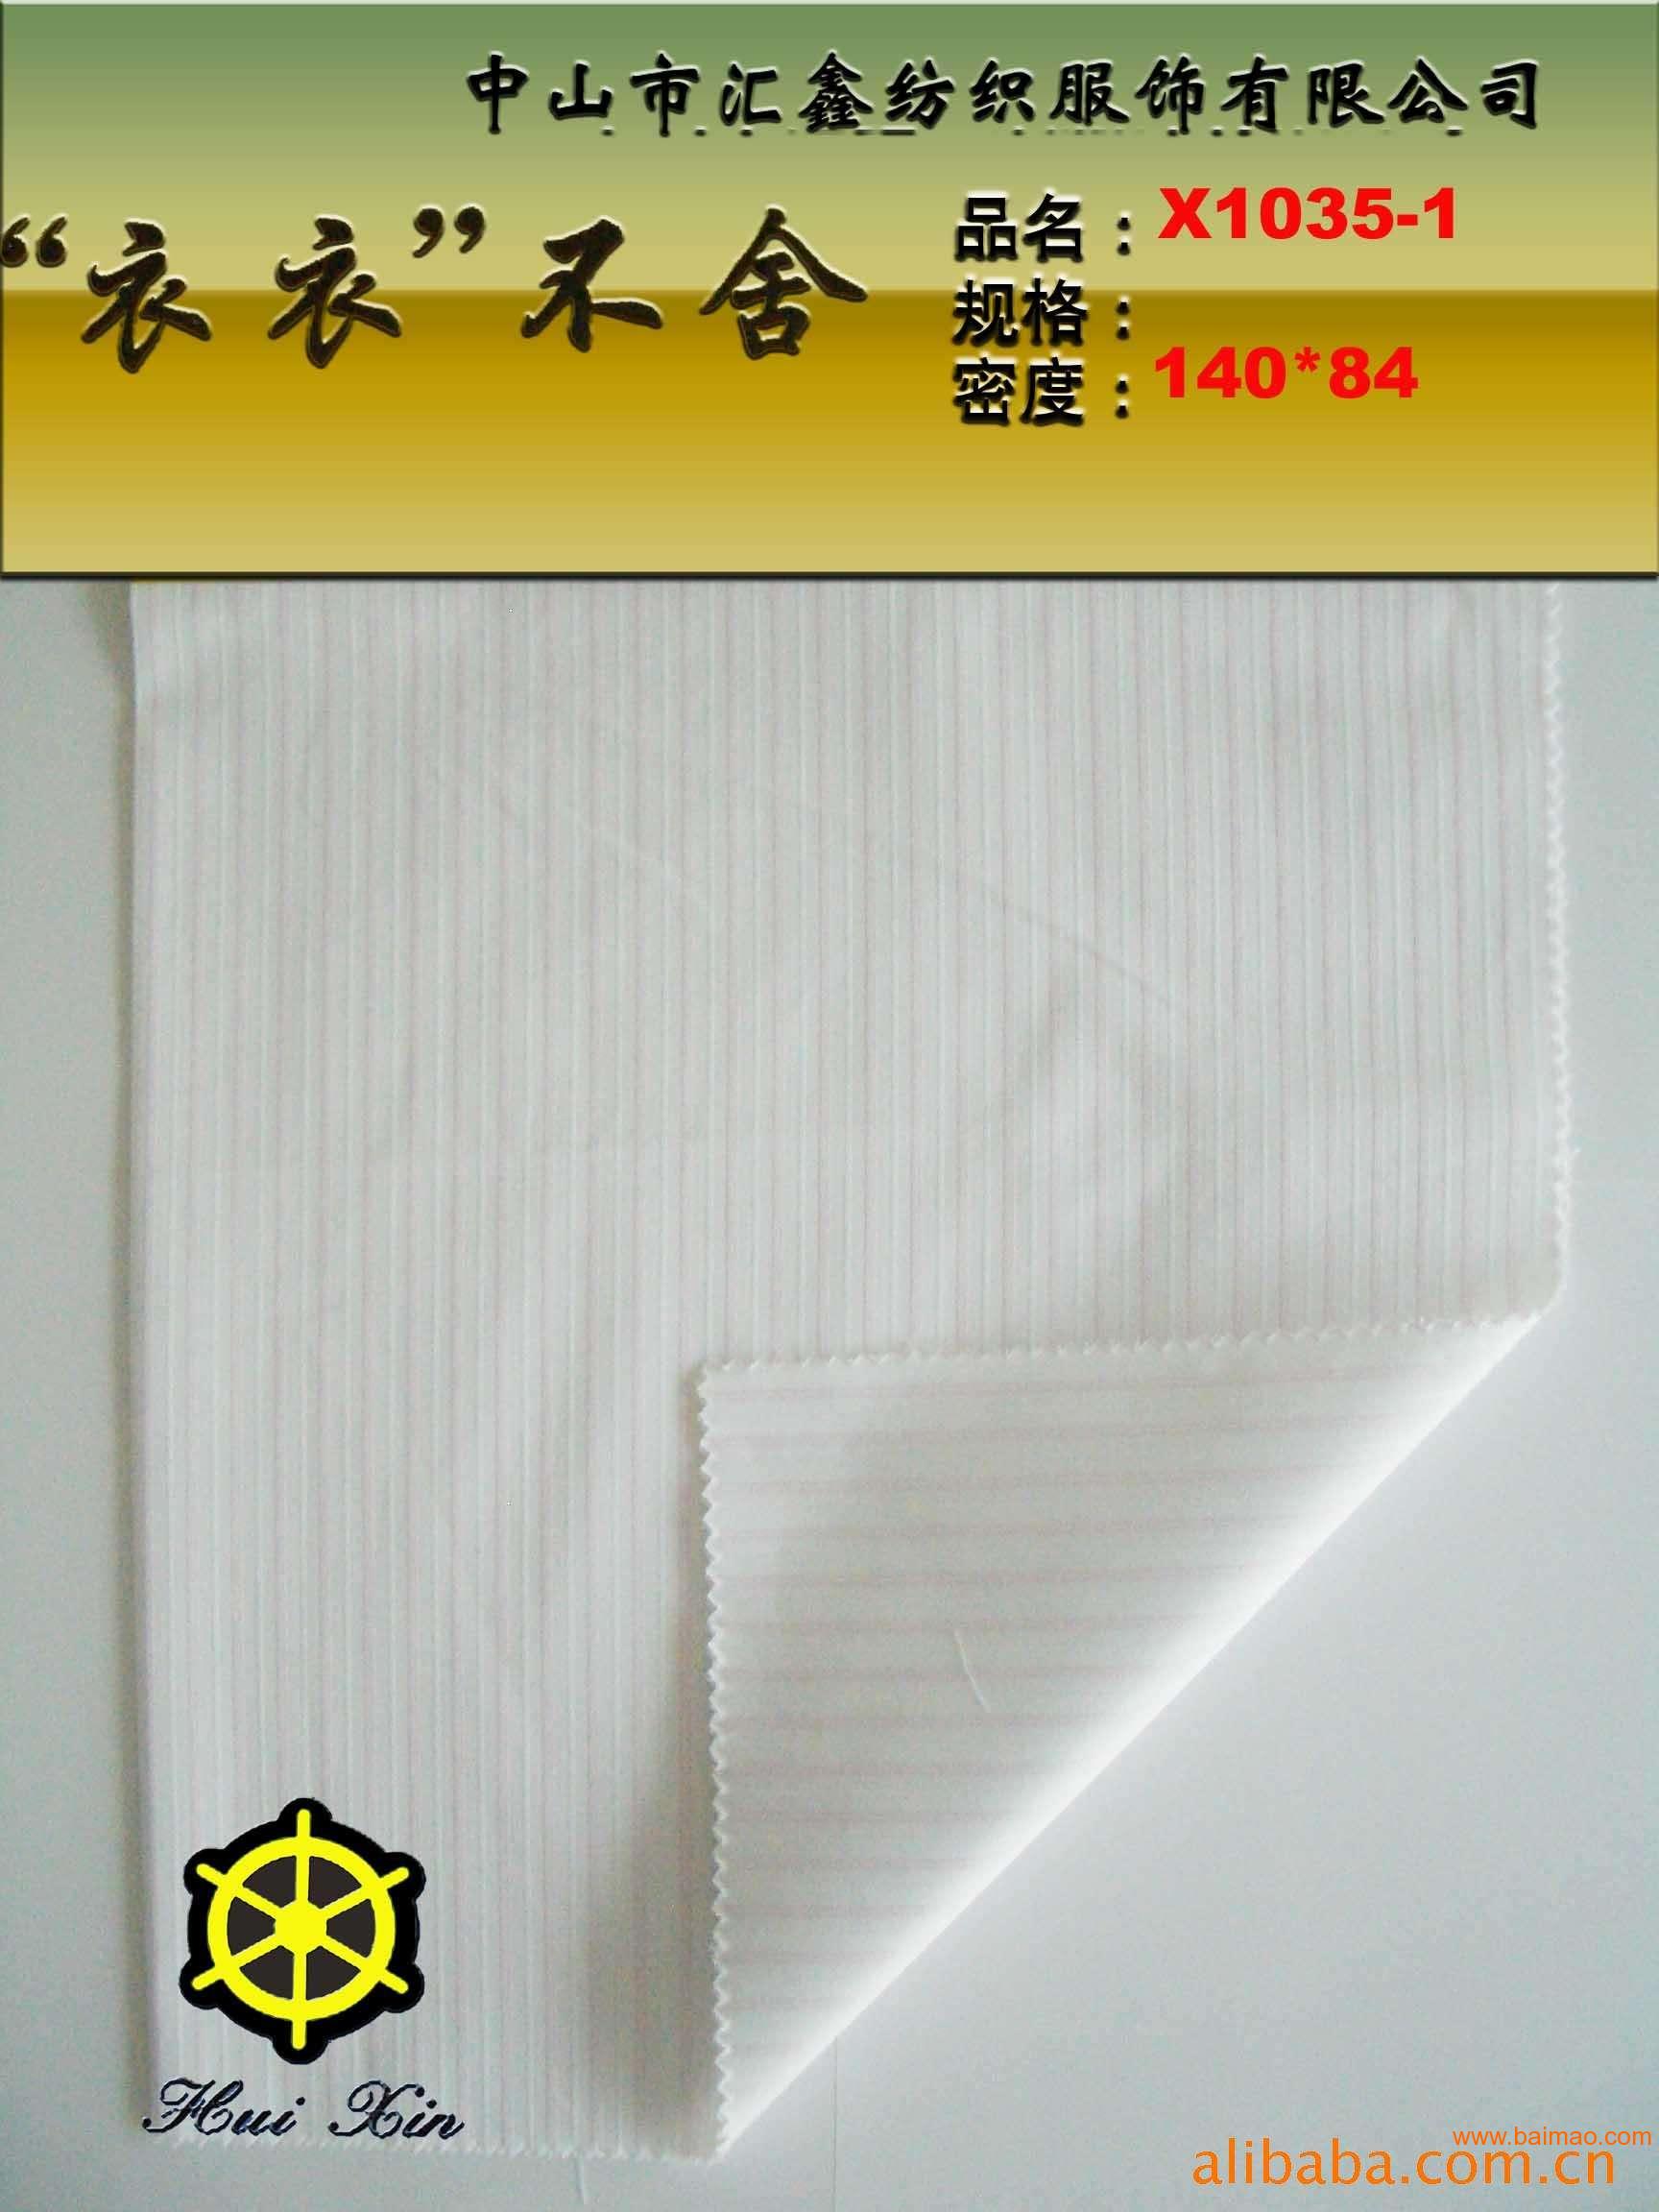 供应各类纺织面料/CVC条纹面料/衬衫x1035-